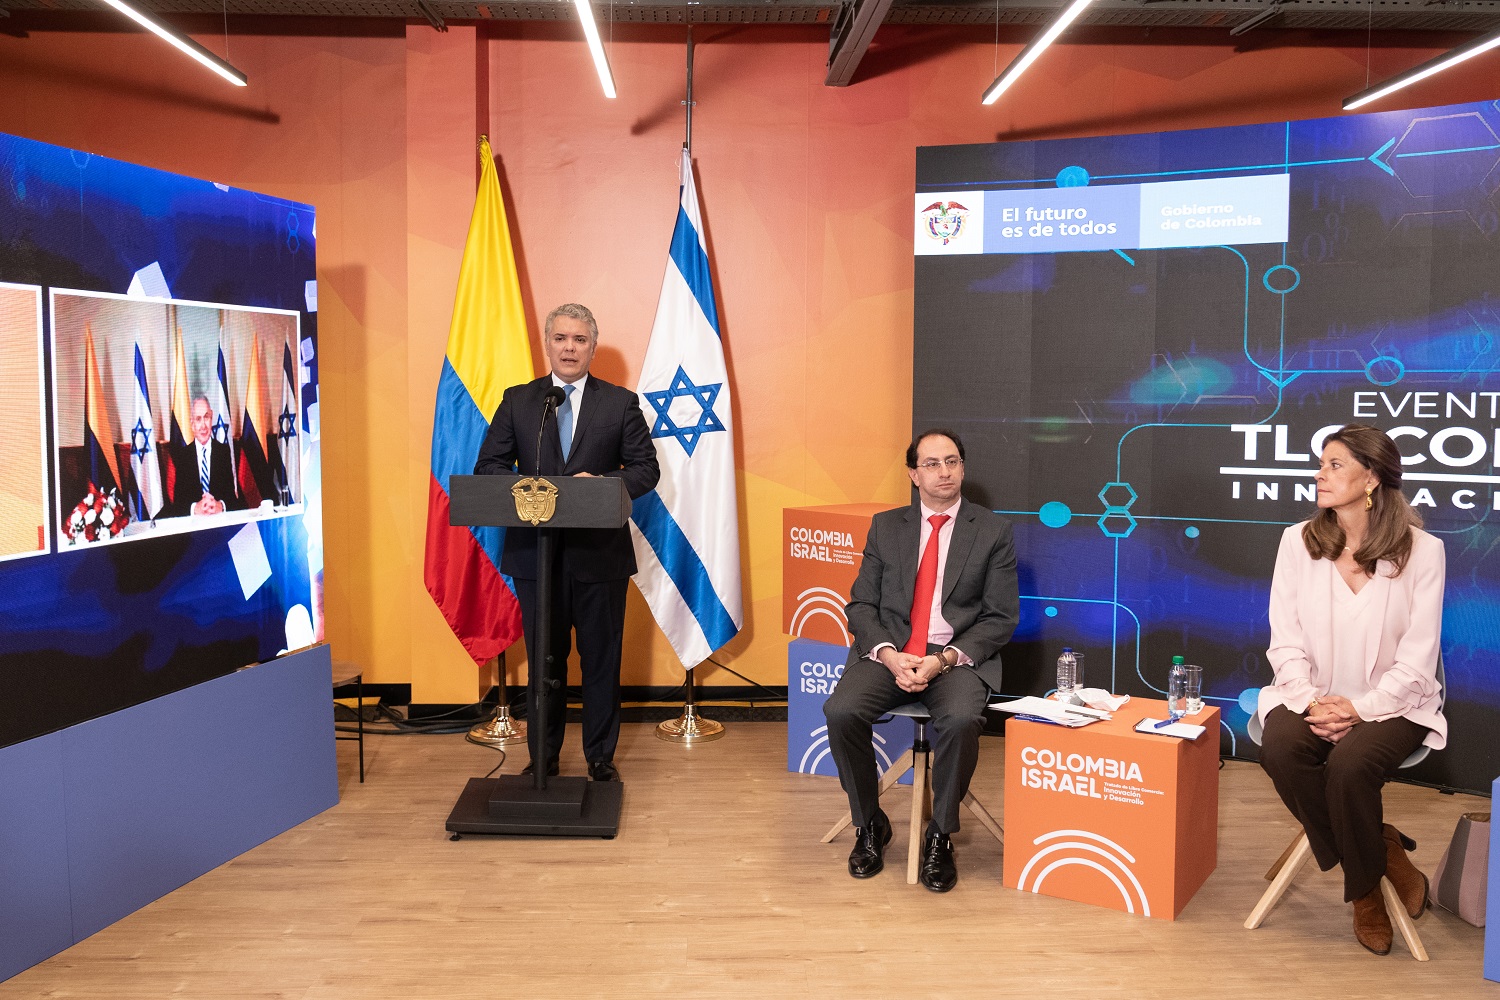 Este martes 11 de agosto entra en vigor el Tratado de Libre Comercio entre Colombia e Israel